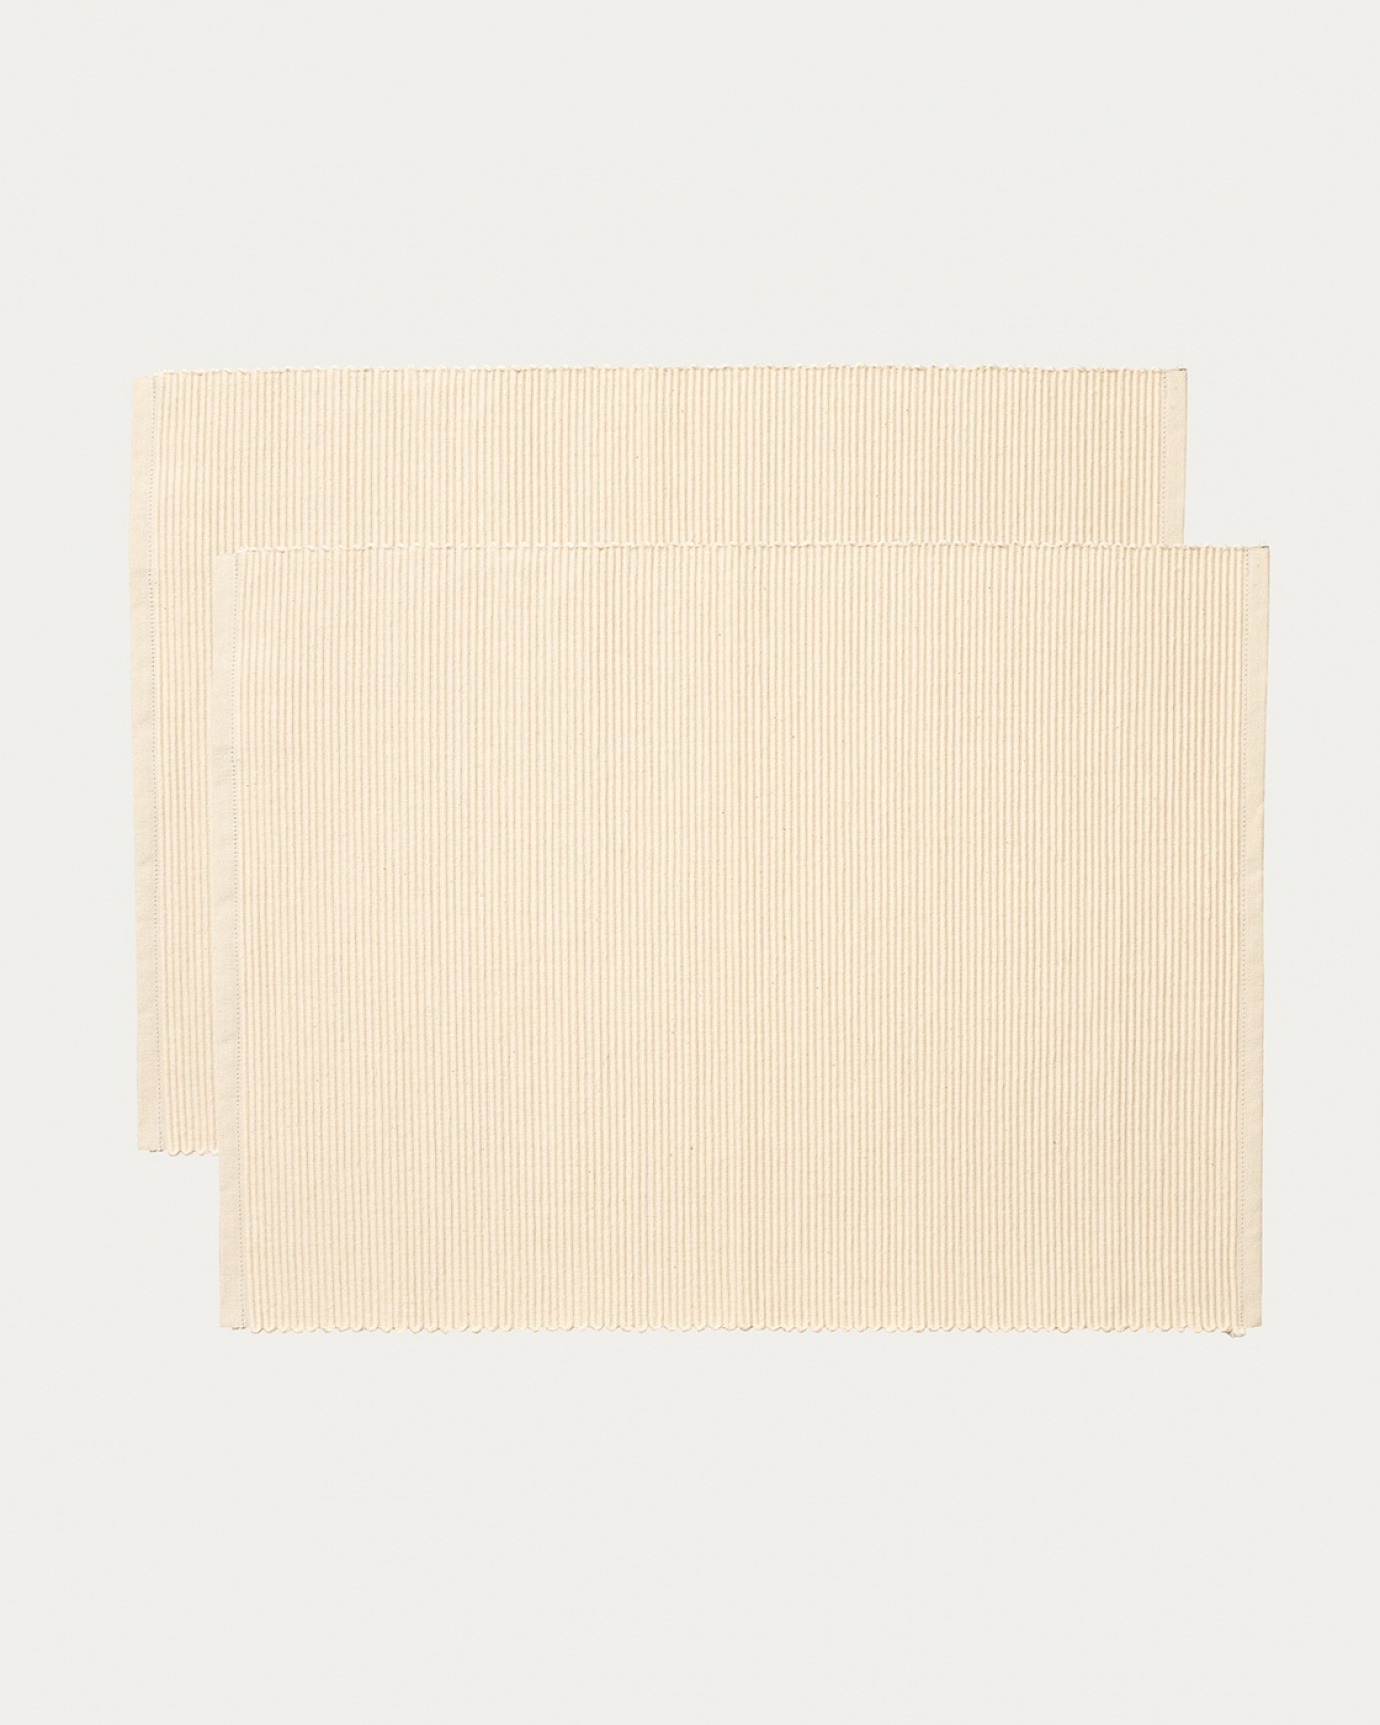 Immagine prodotto beige crema tovaglietta UNI in morbido cotone a costine di qualità di LINUM DESIGN. Dimensioni 35x46 cm e venduto in 2-pezzi.